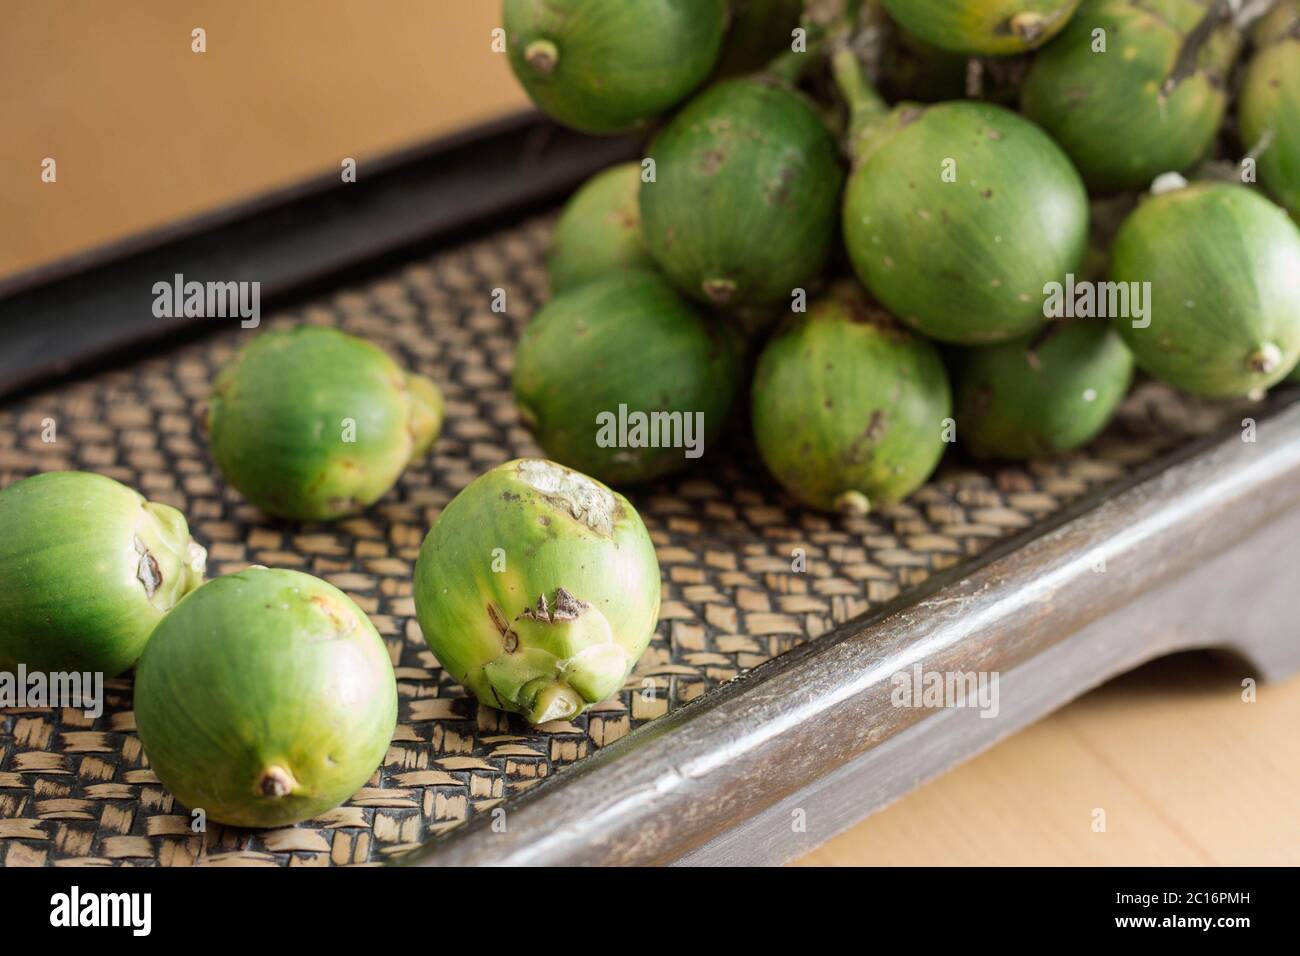 betel nut on tray. Stock Photo